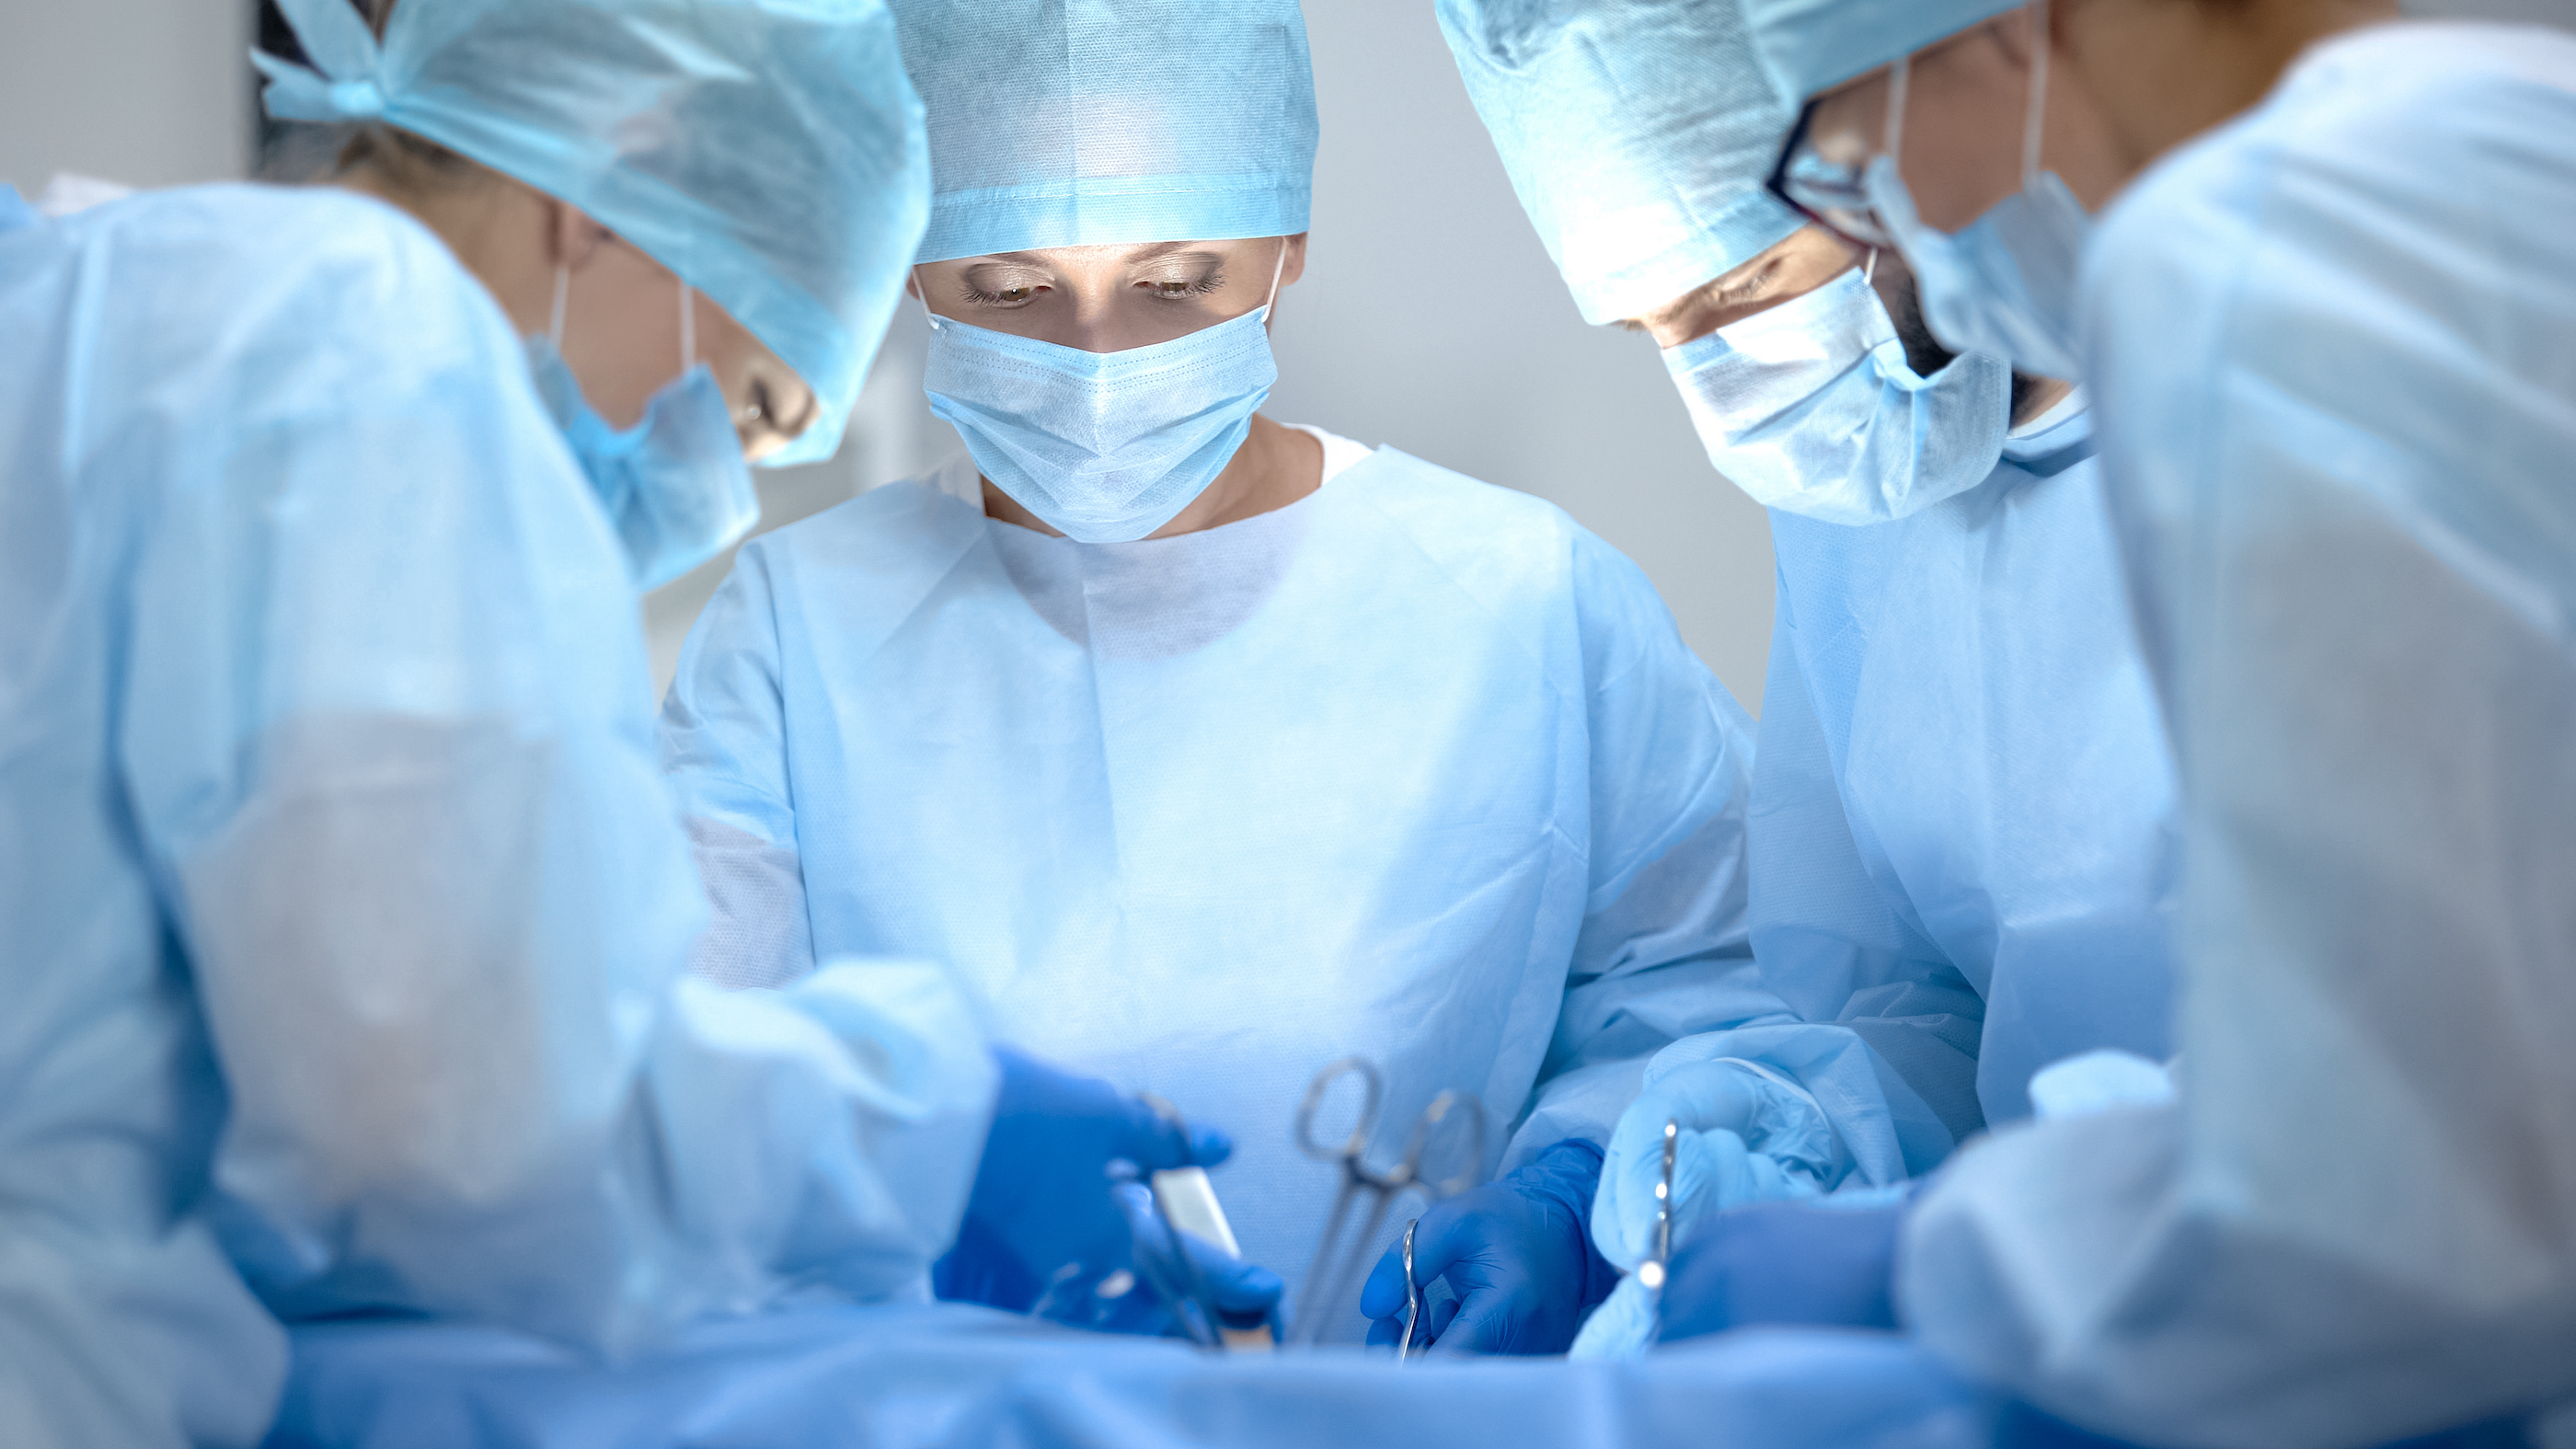 Équipe chirurgicale pratiquant la chirurgie thoracique dans un hôpital moderne, santé